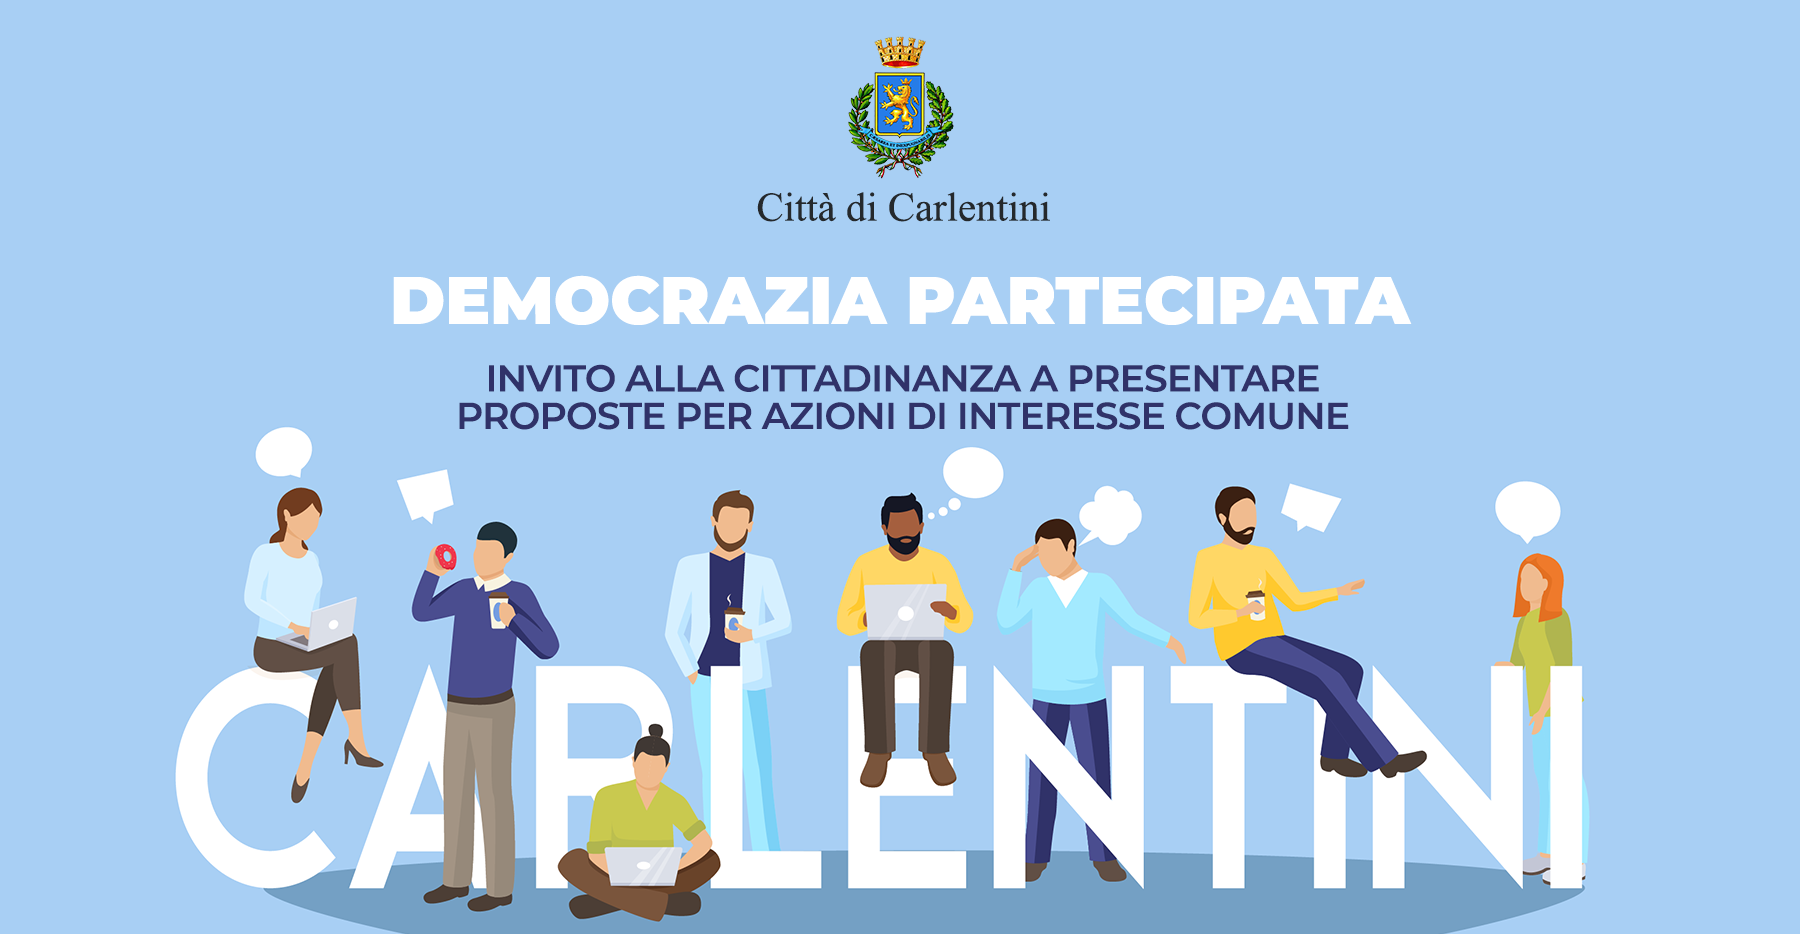 Democrazia Partecipata: Invito alla cittadinanza a presentare proposte per azioni di interesse comune